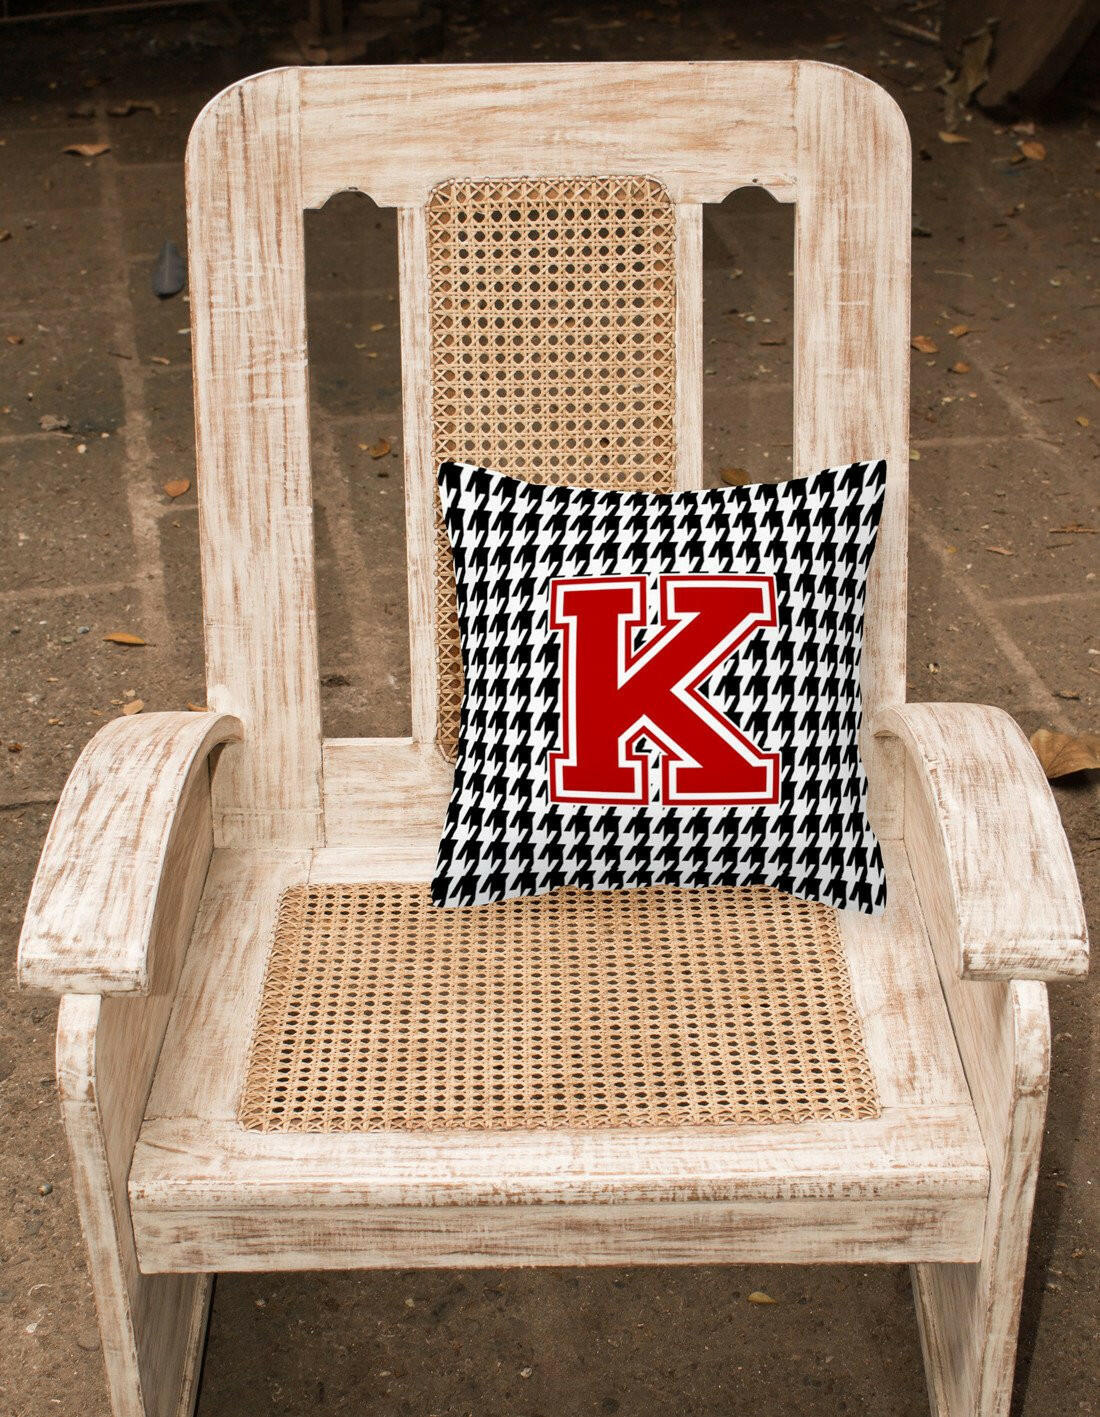 Monogram - Initial K Houndstooth Decorative   Canvas Fabric Pillow CJ1021 - the-store.com